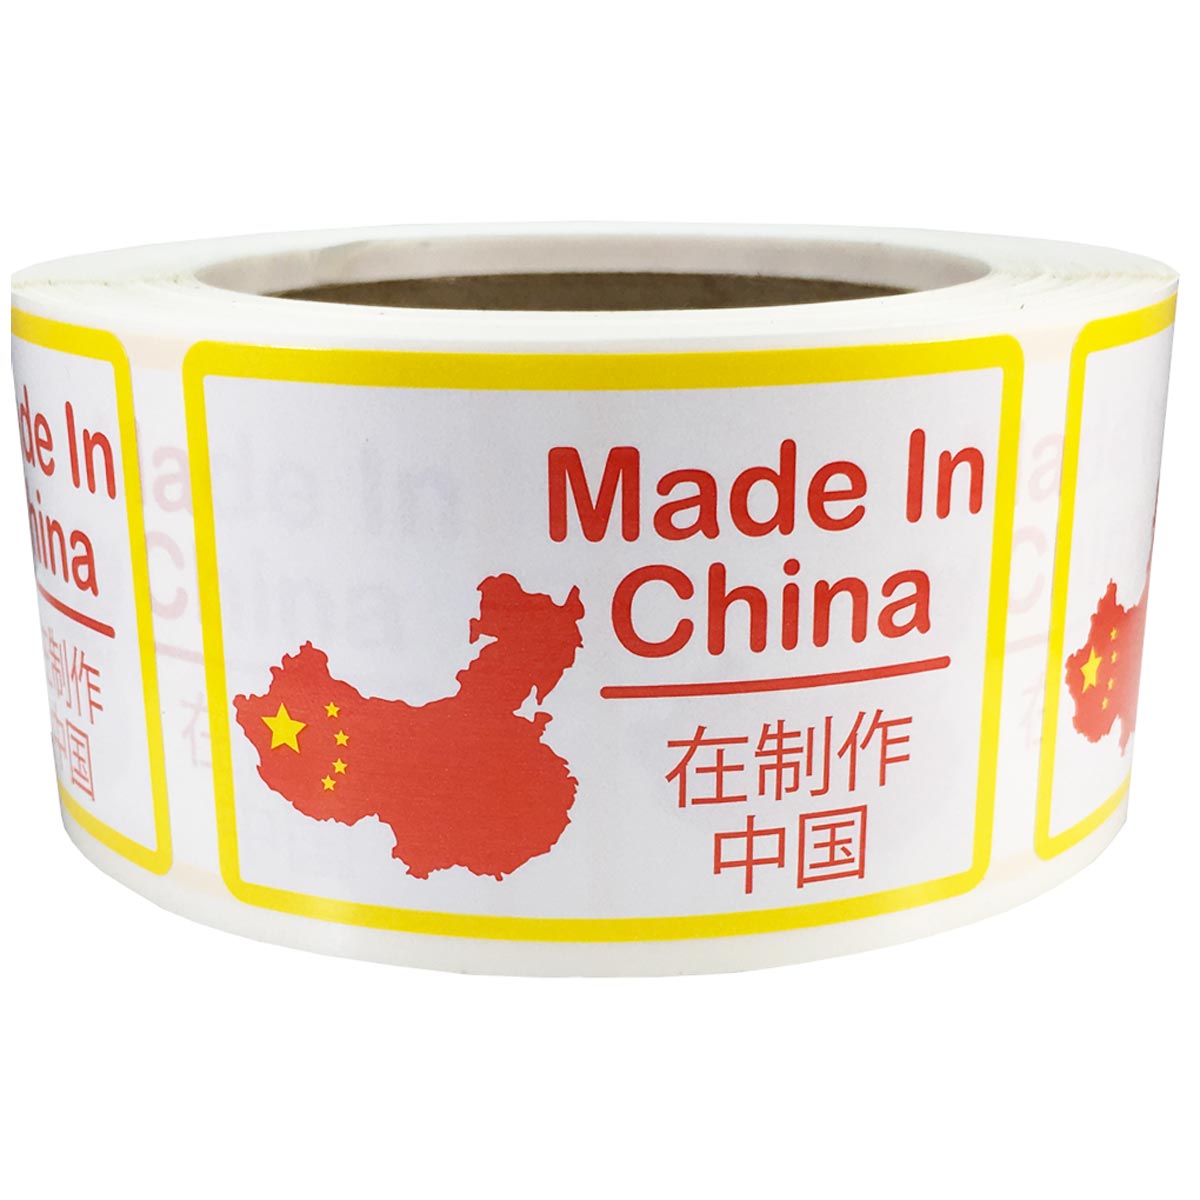 Label Китай. Китай наклейка made in China. Этикетка клея. Китайские этикетки